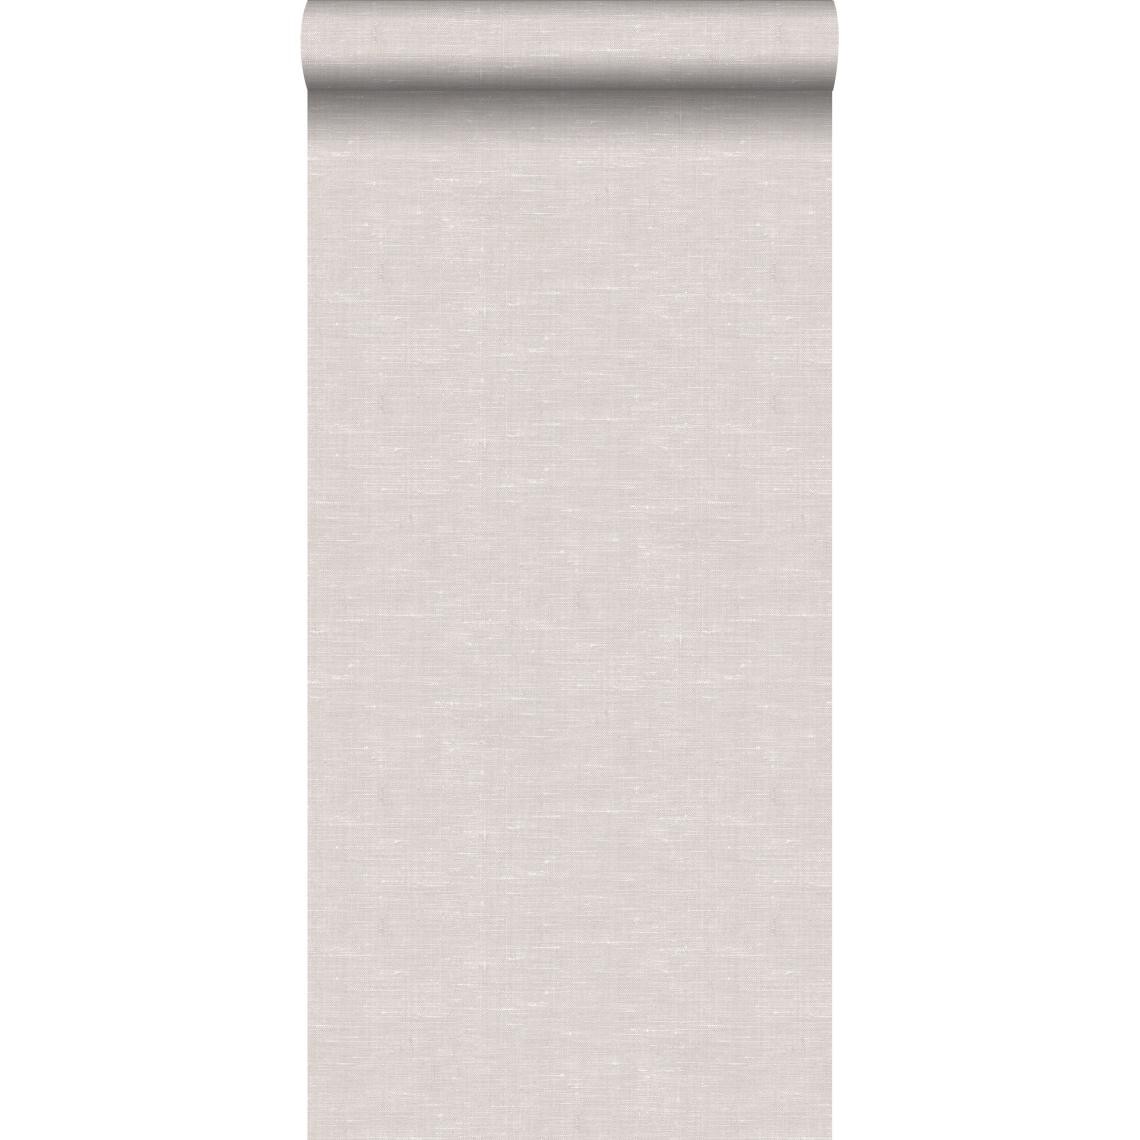 ESTAhome - ESTAhome papier peint lin brun grisé - 148695 - 53 cm x 10,05 m - Papier peint